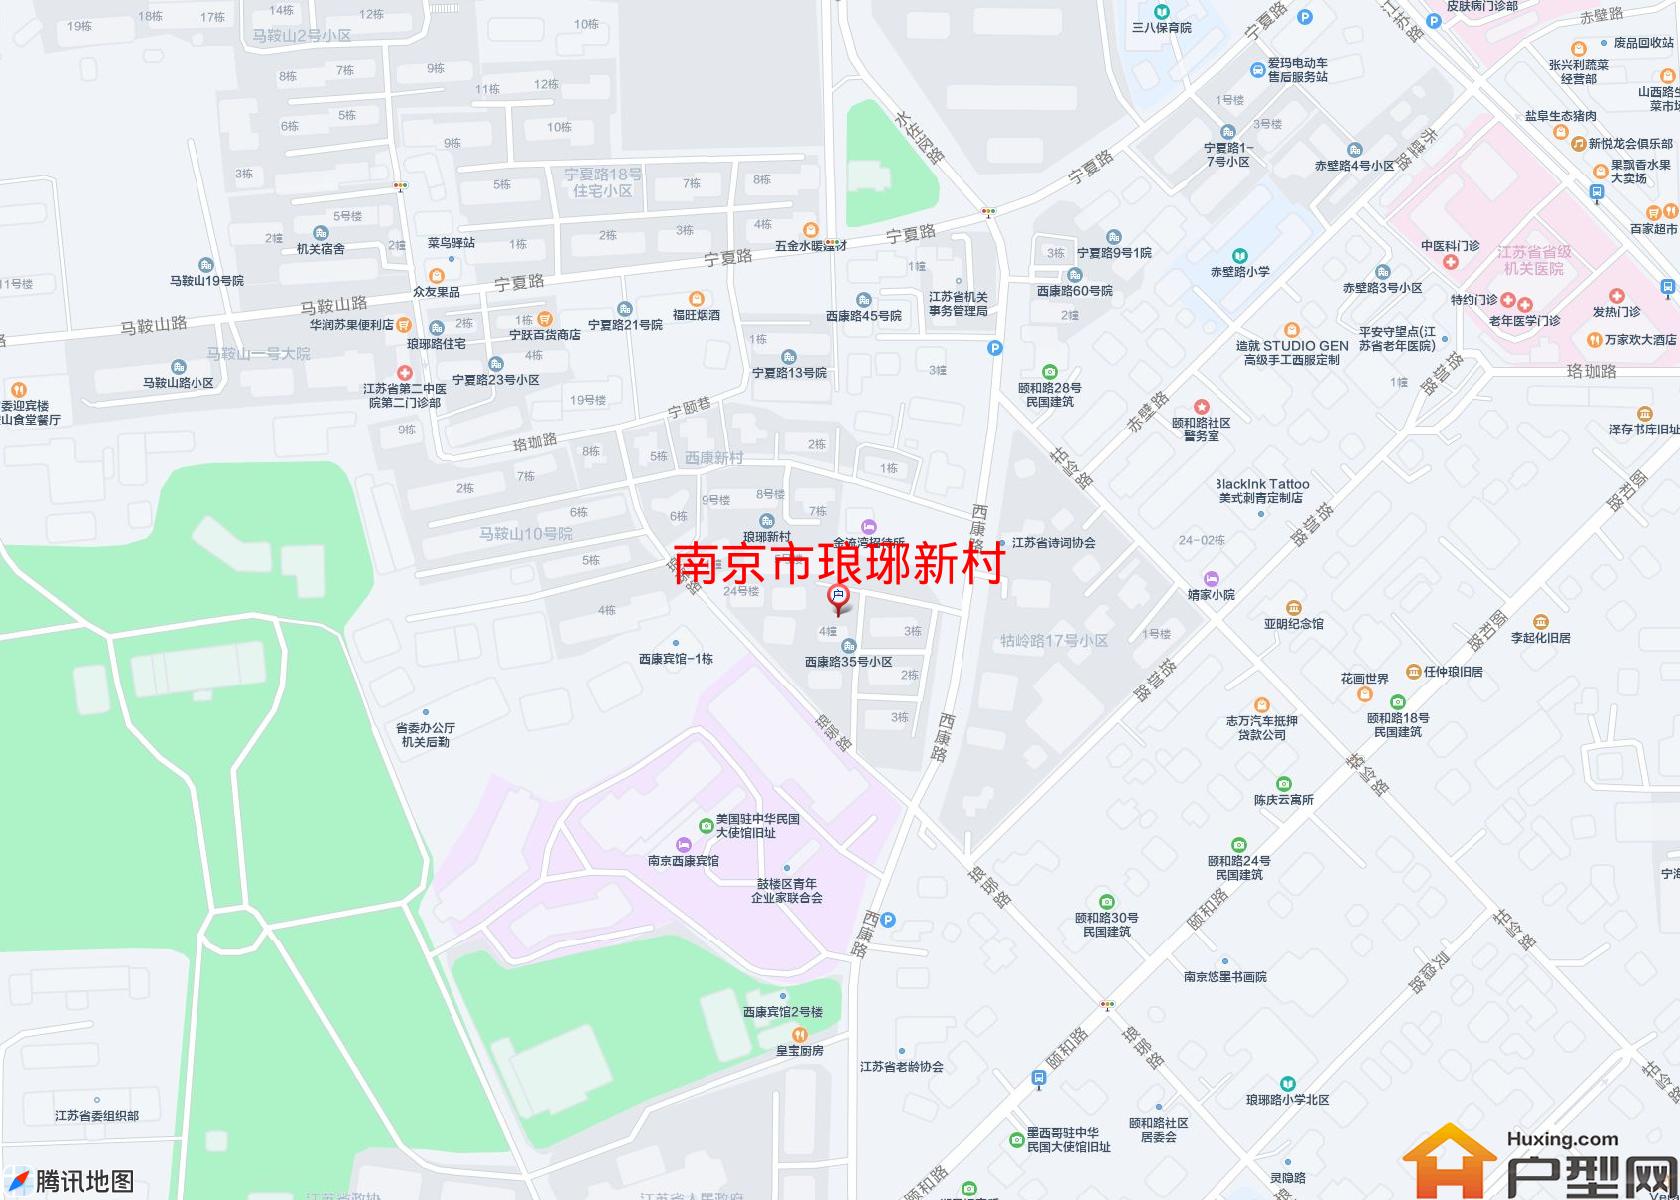 琅琊新村小区 - 户型网